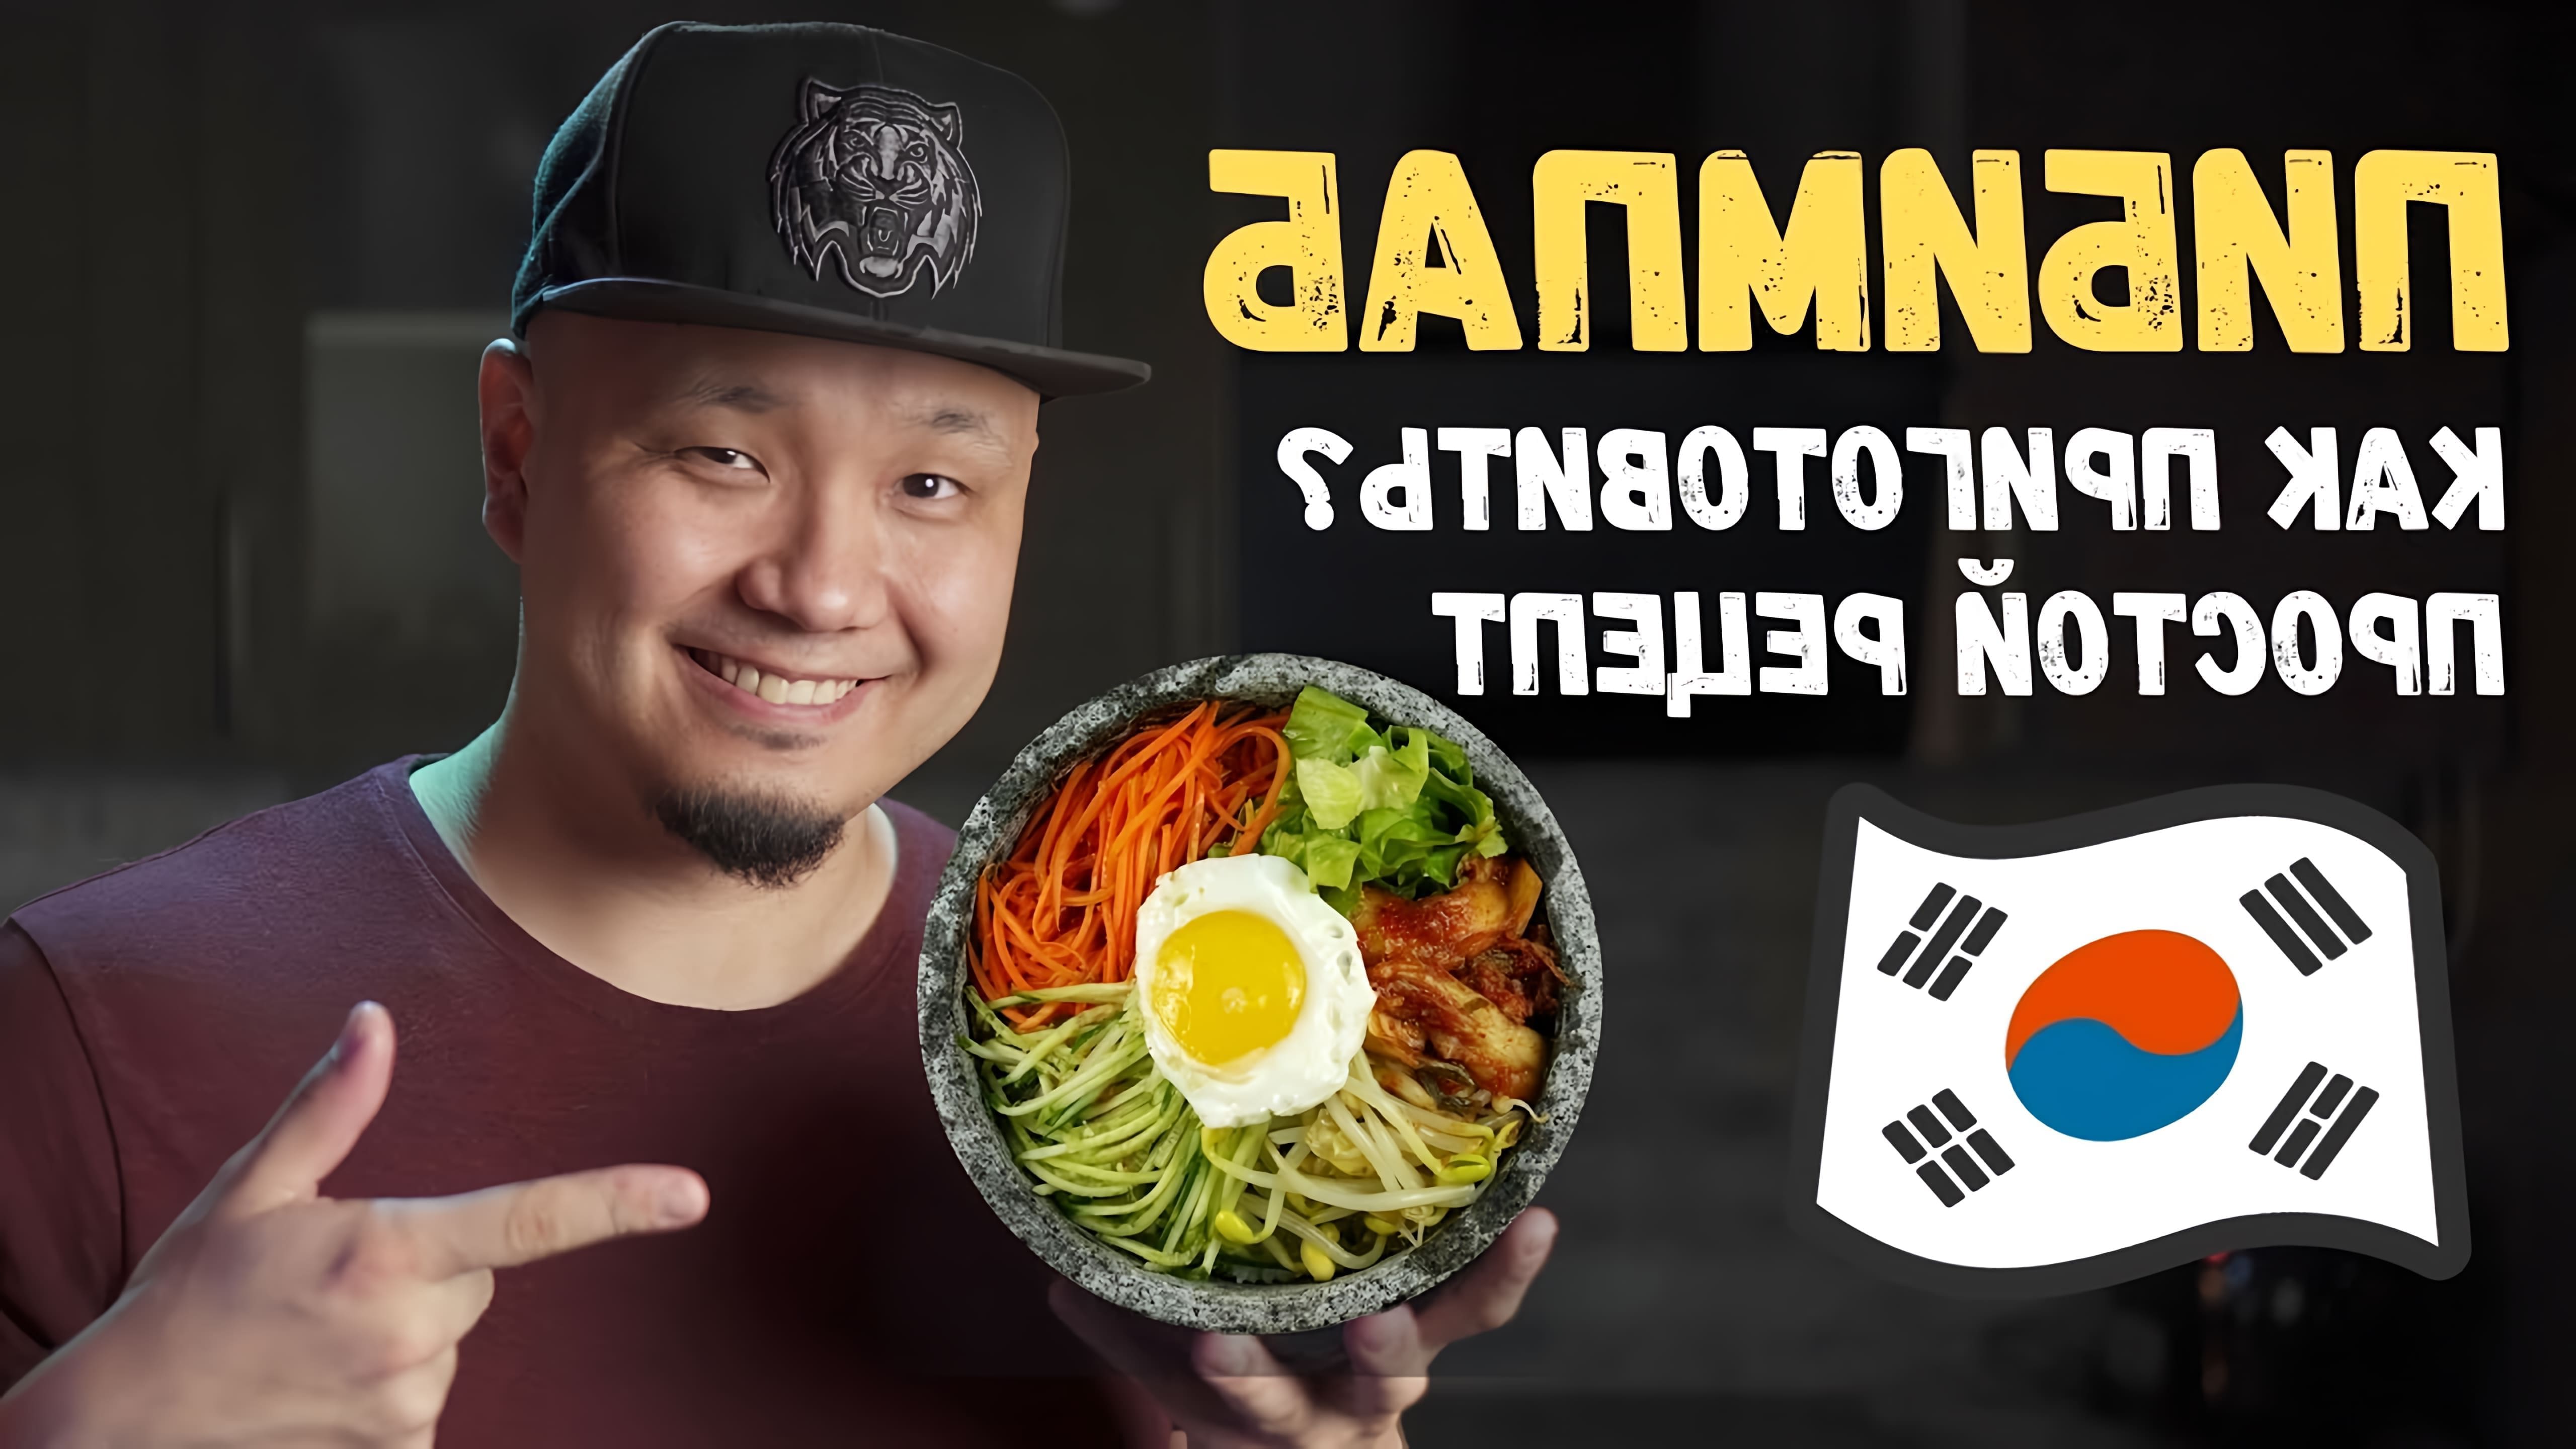 В этом видео демонстрируется рецепт приготовления корейского блюда под названием пибимбап